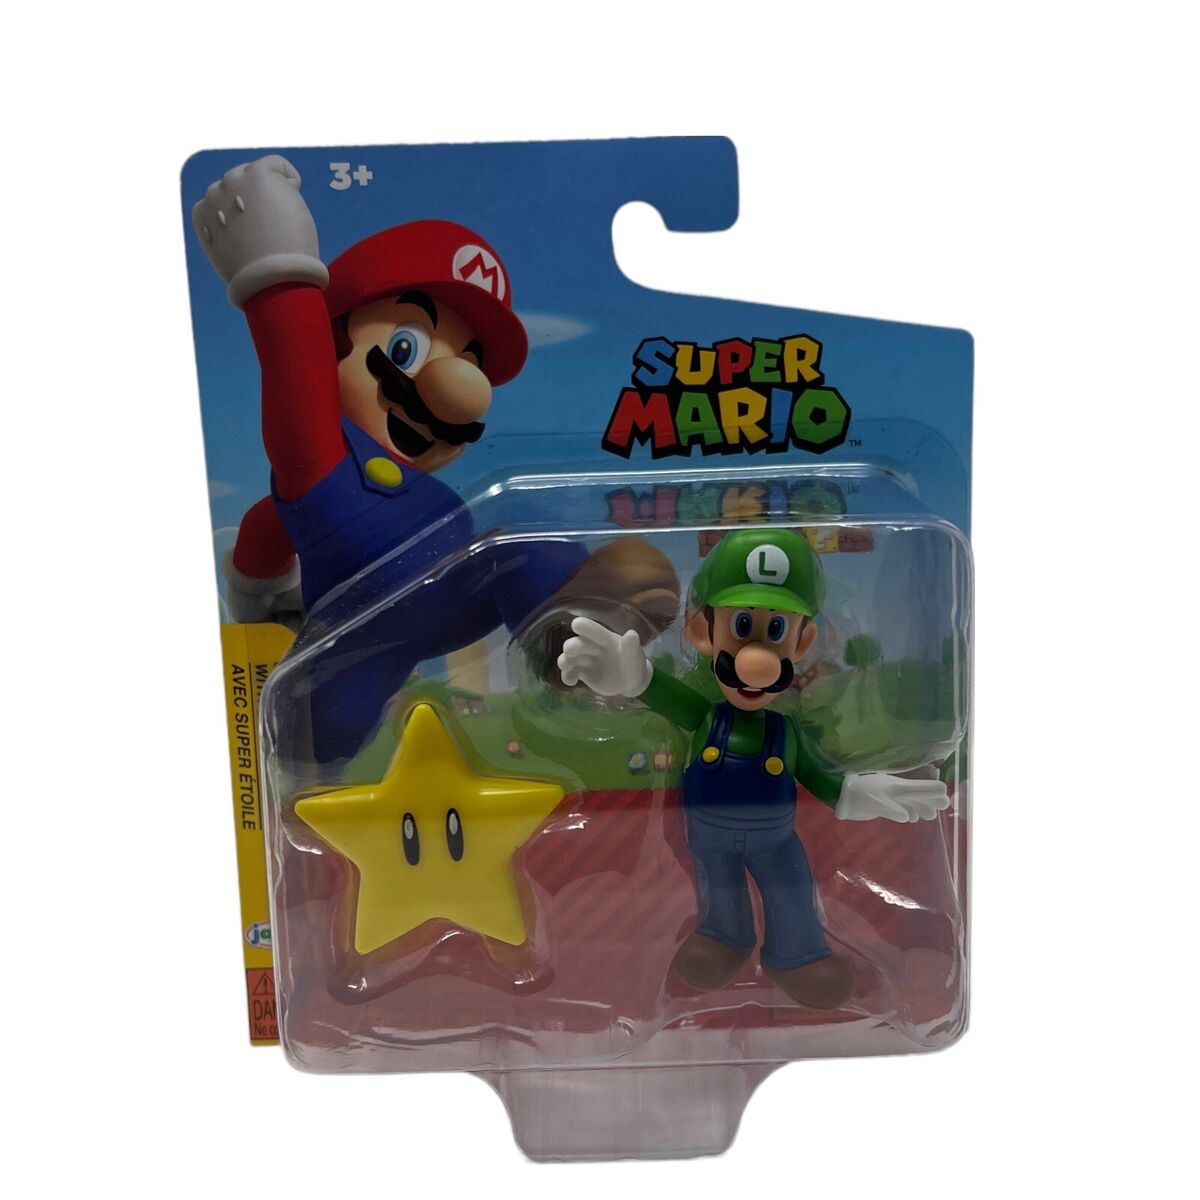 Super Mario Luigi with Super Star Figure